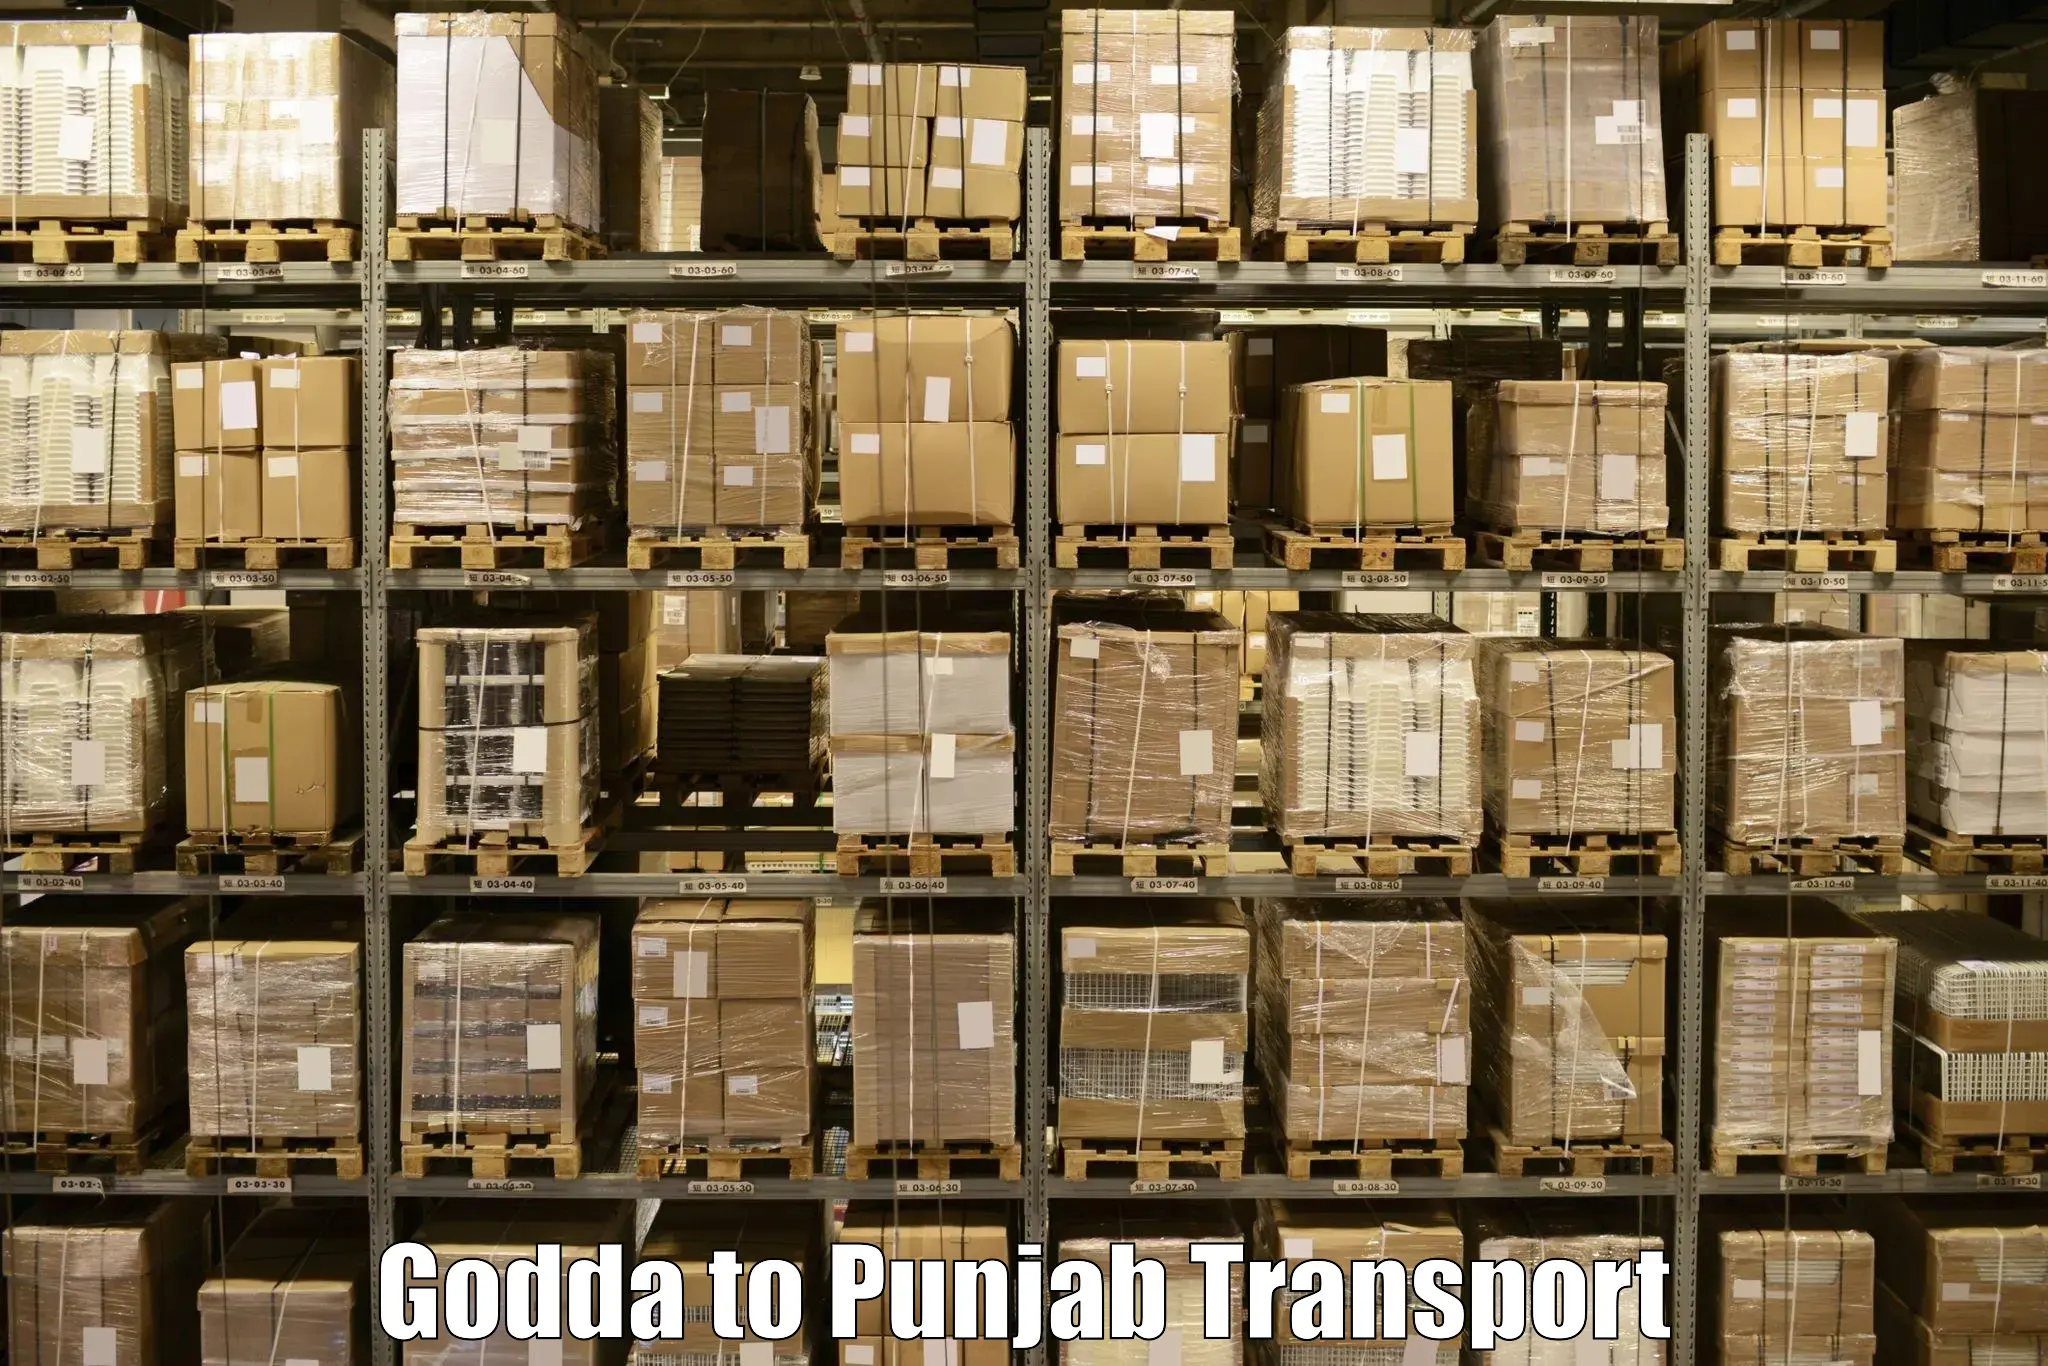 Online transport service Godda to Tarsikka